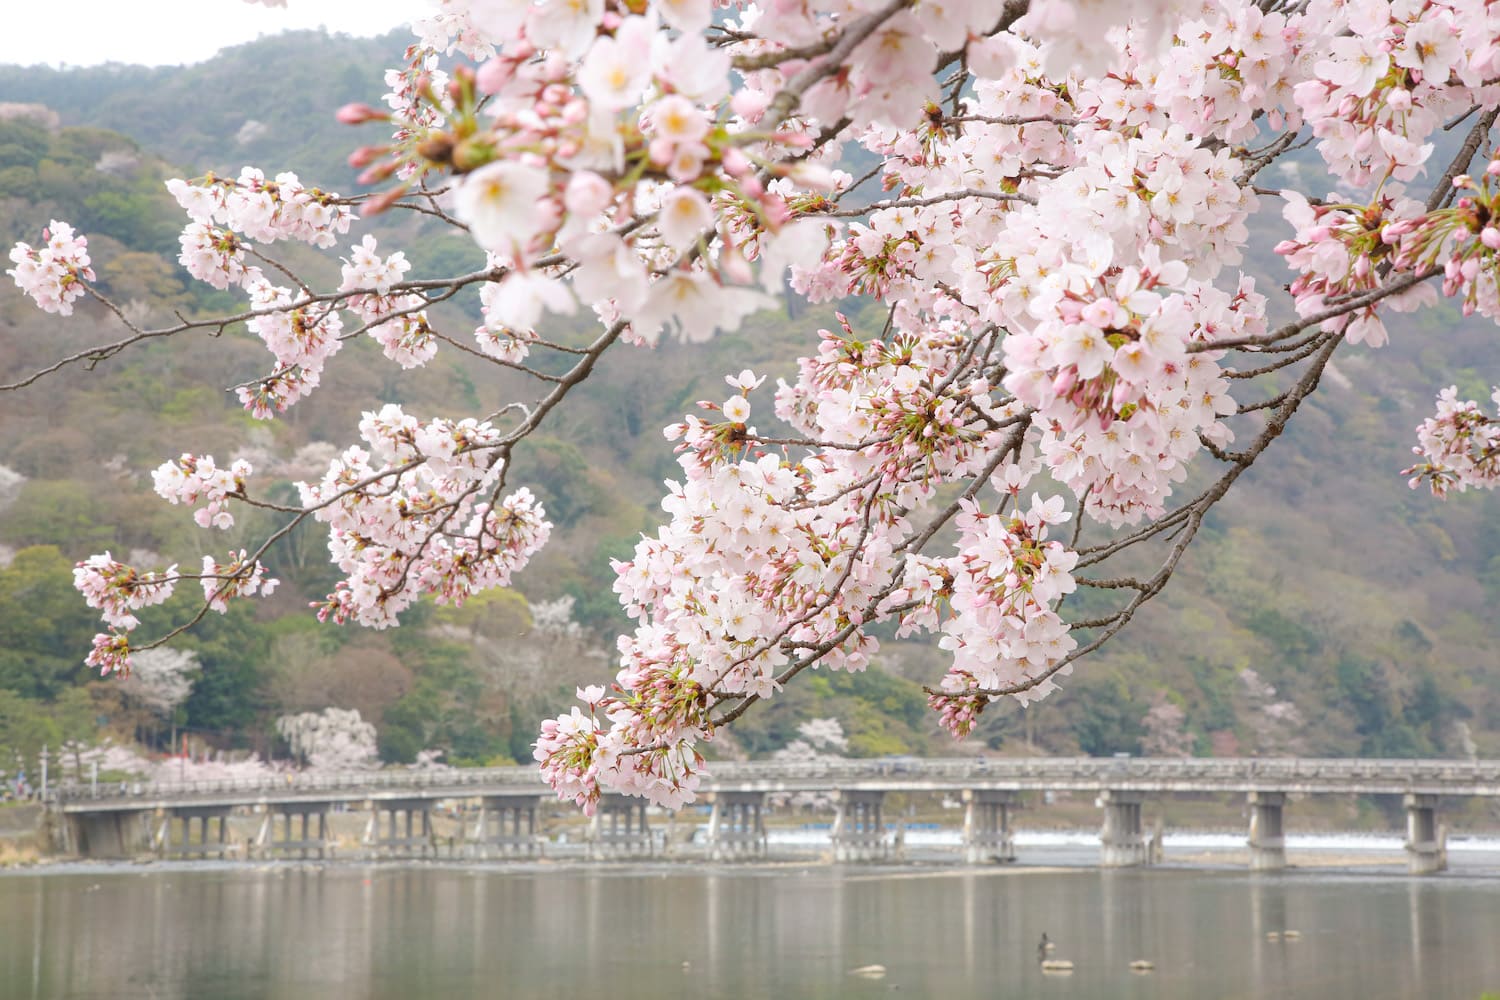 嵐山渡月橋桜